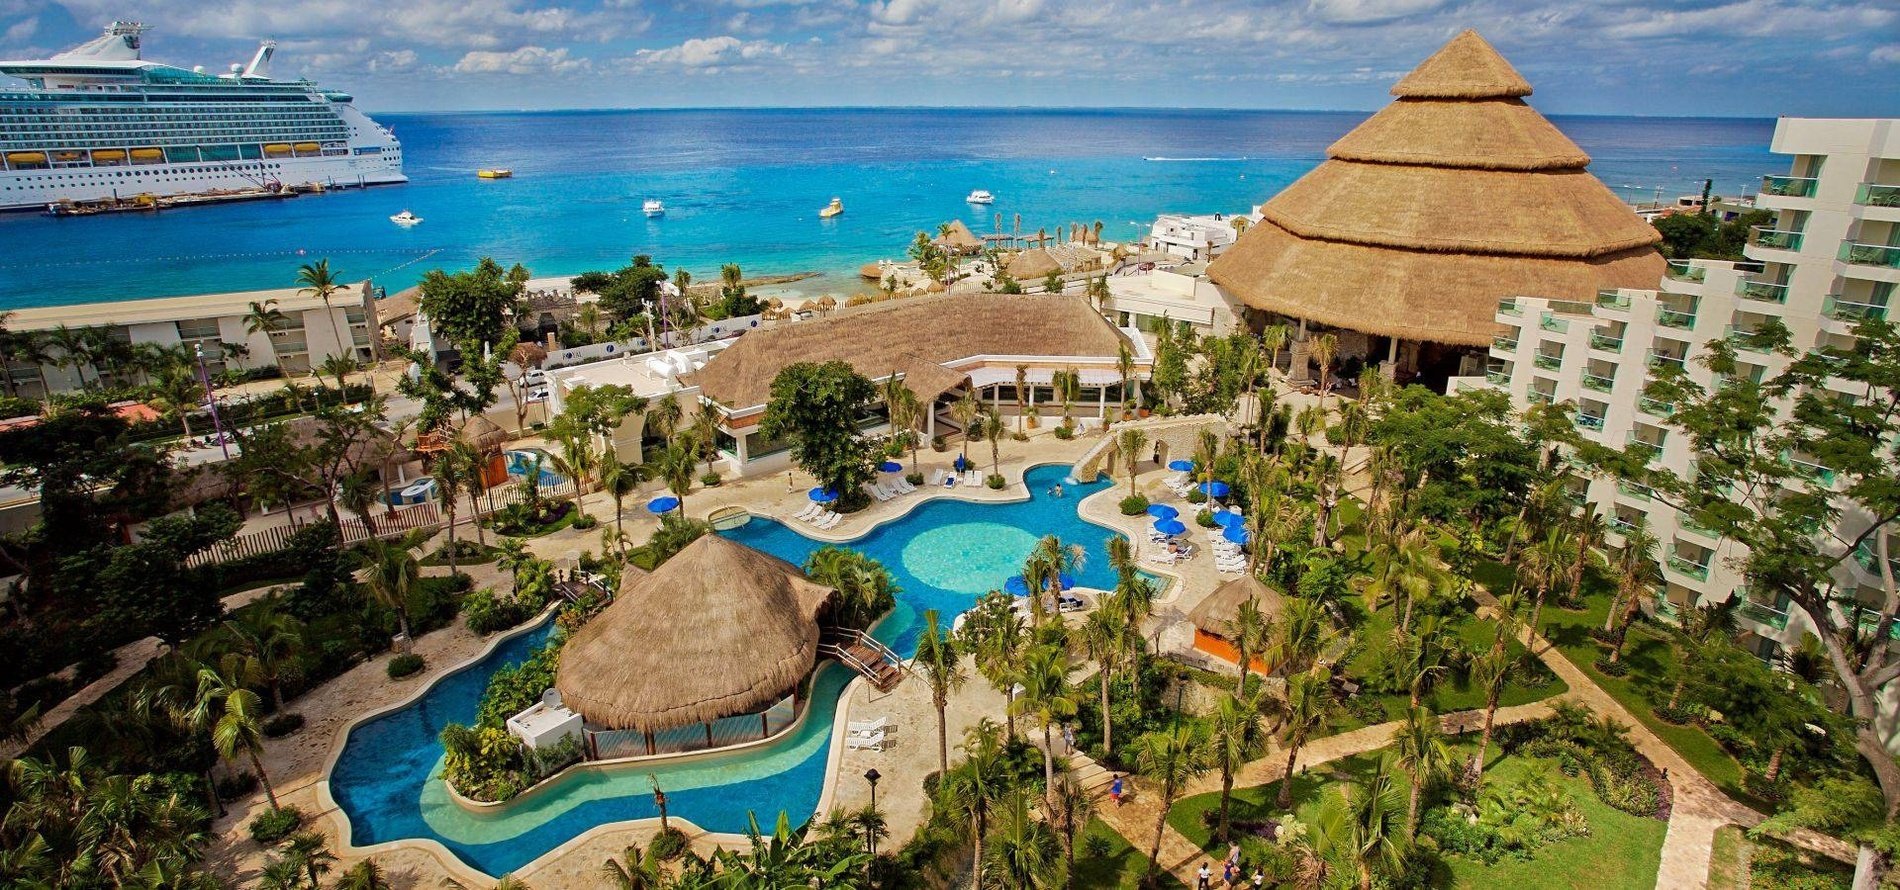 Visão geral das instalações do Grand Park Royal Cozumel Hotel no Caribe mexicano